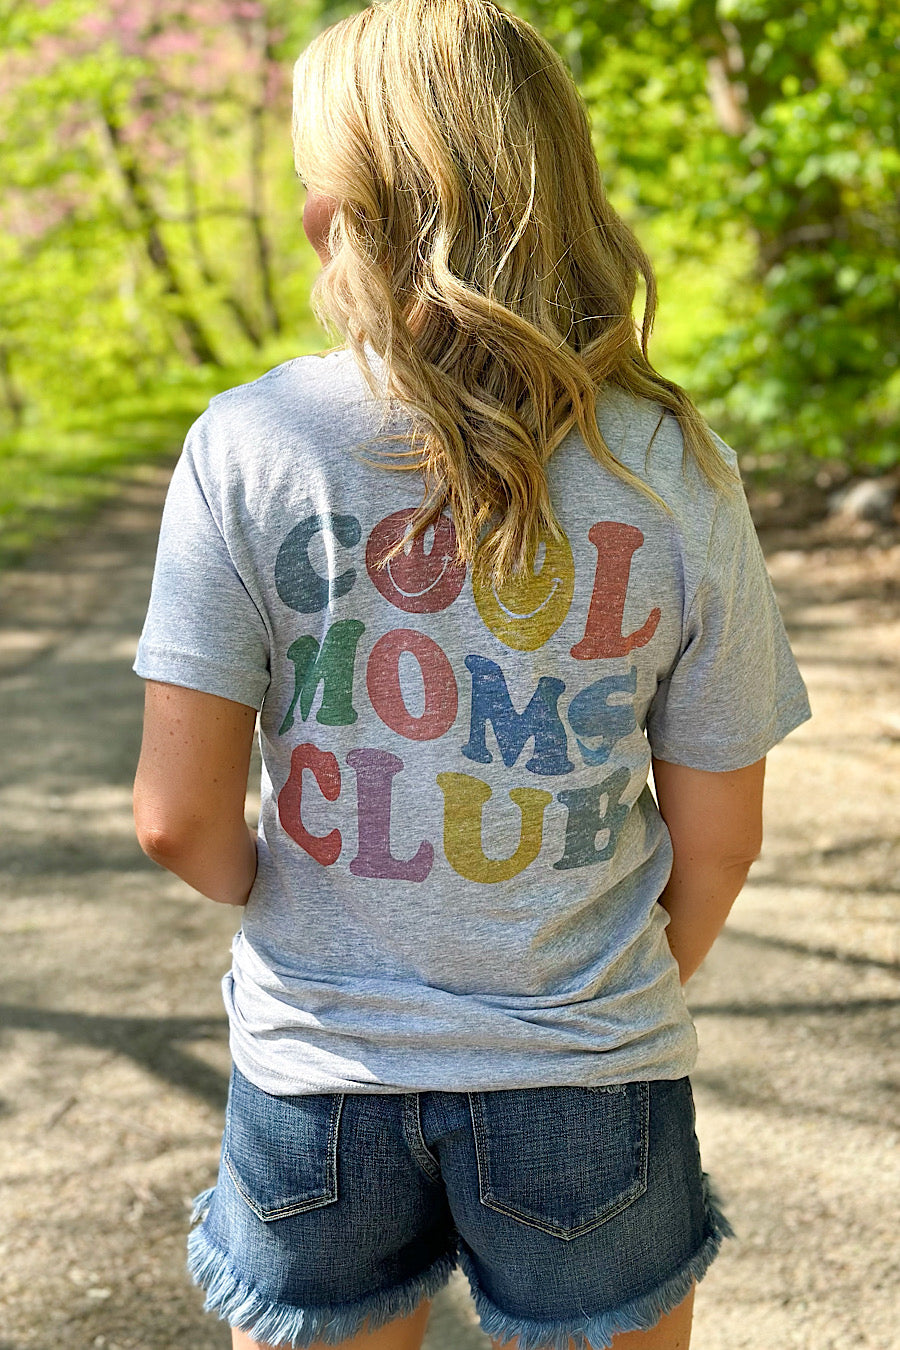 Cool Mom Club Graphic T-Shirt